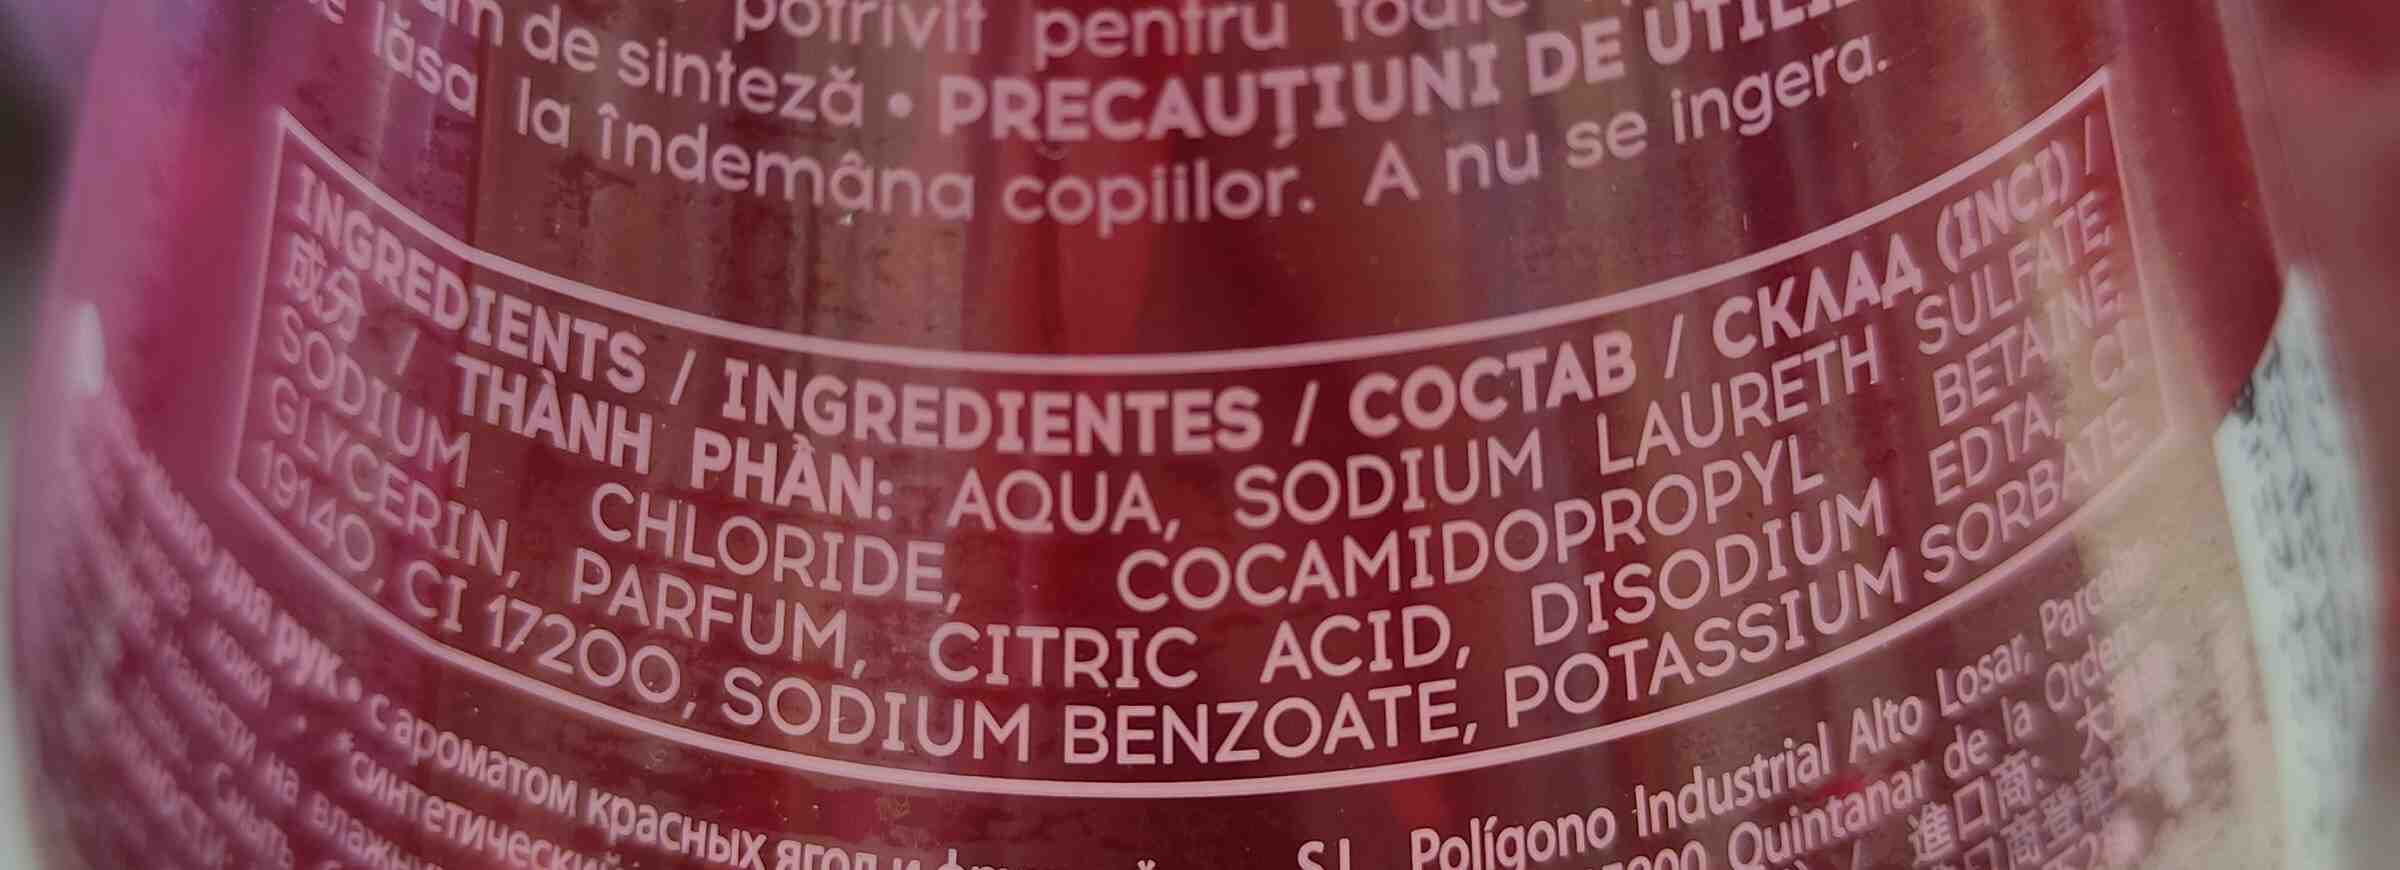 Cosmia gel lavant mains fruits rouges - Ingredients - en